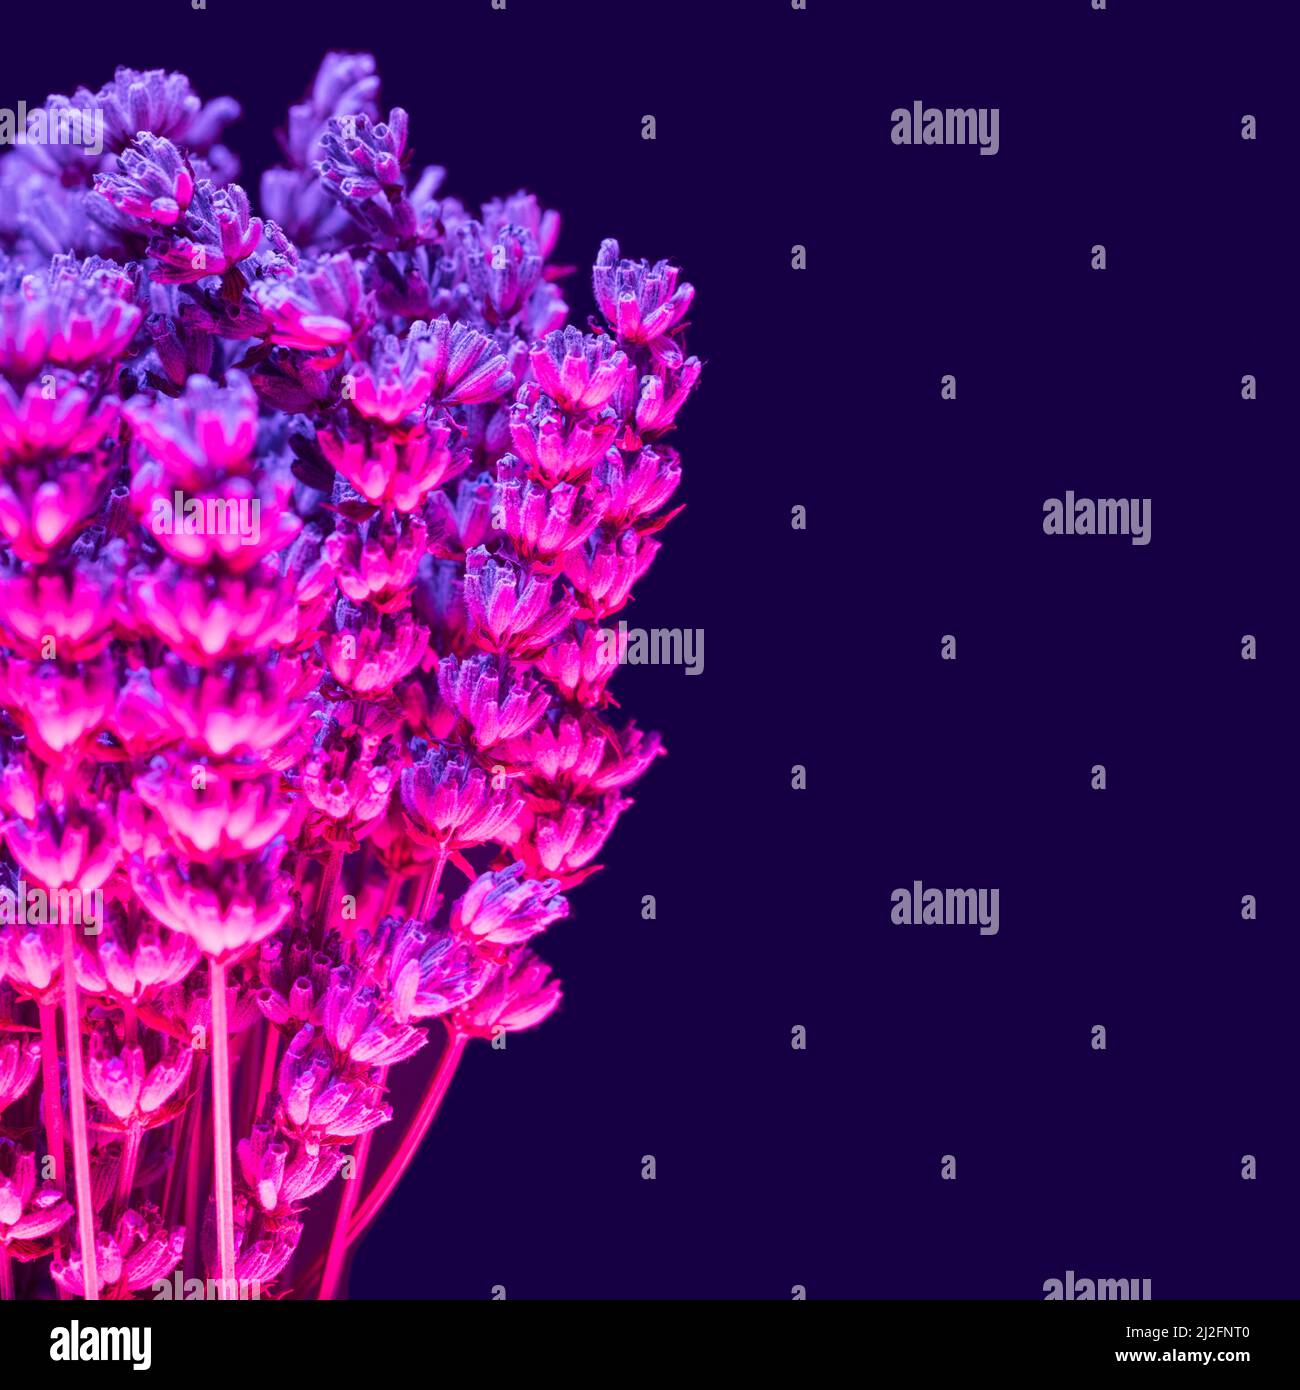 Fleurs de lavande aux teintes magenta et violet sur fond sombre. Cyber, concept minimal au printemps. Banque D'Images